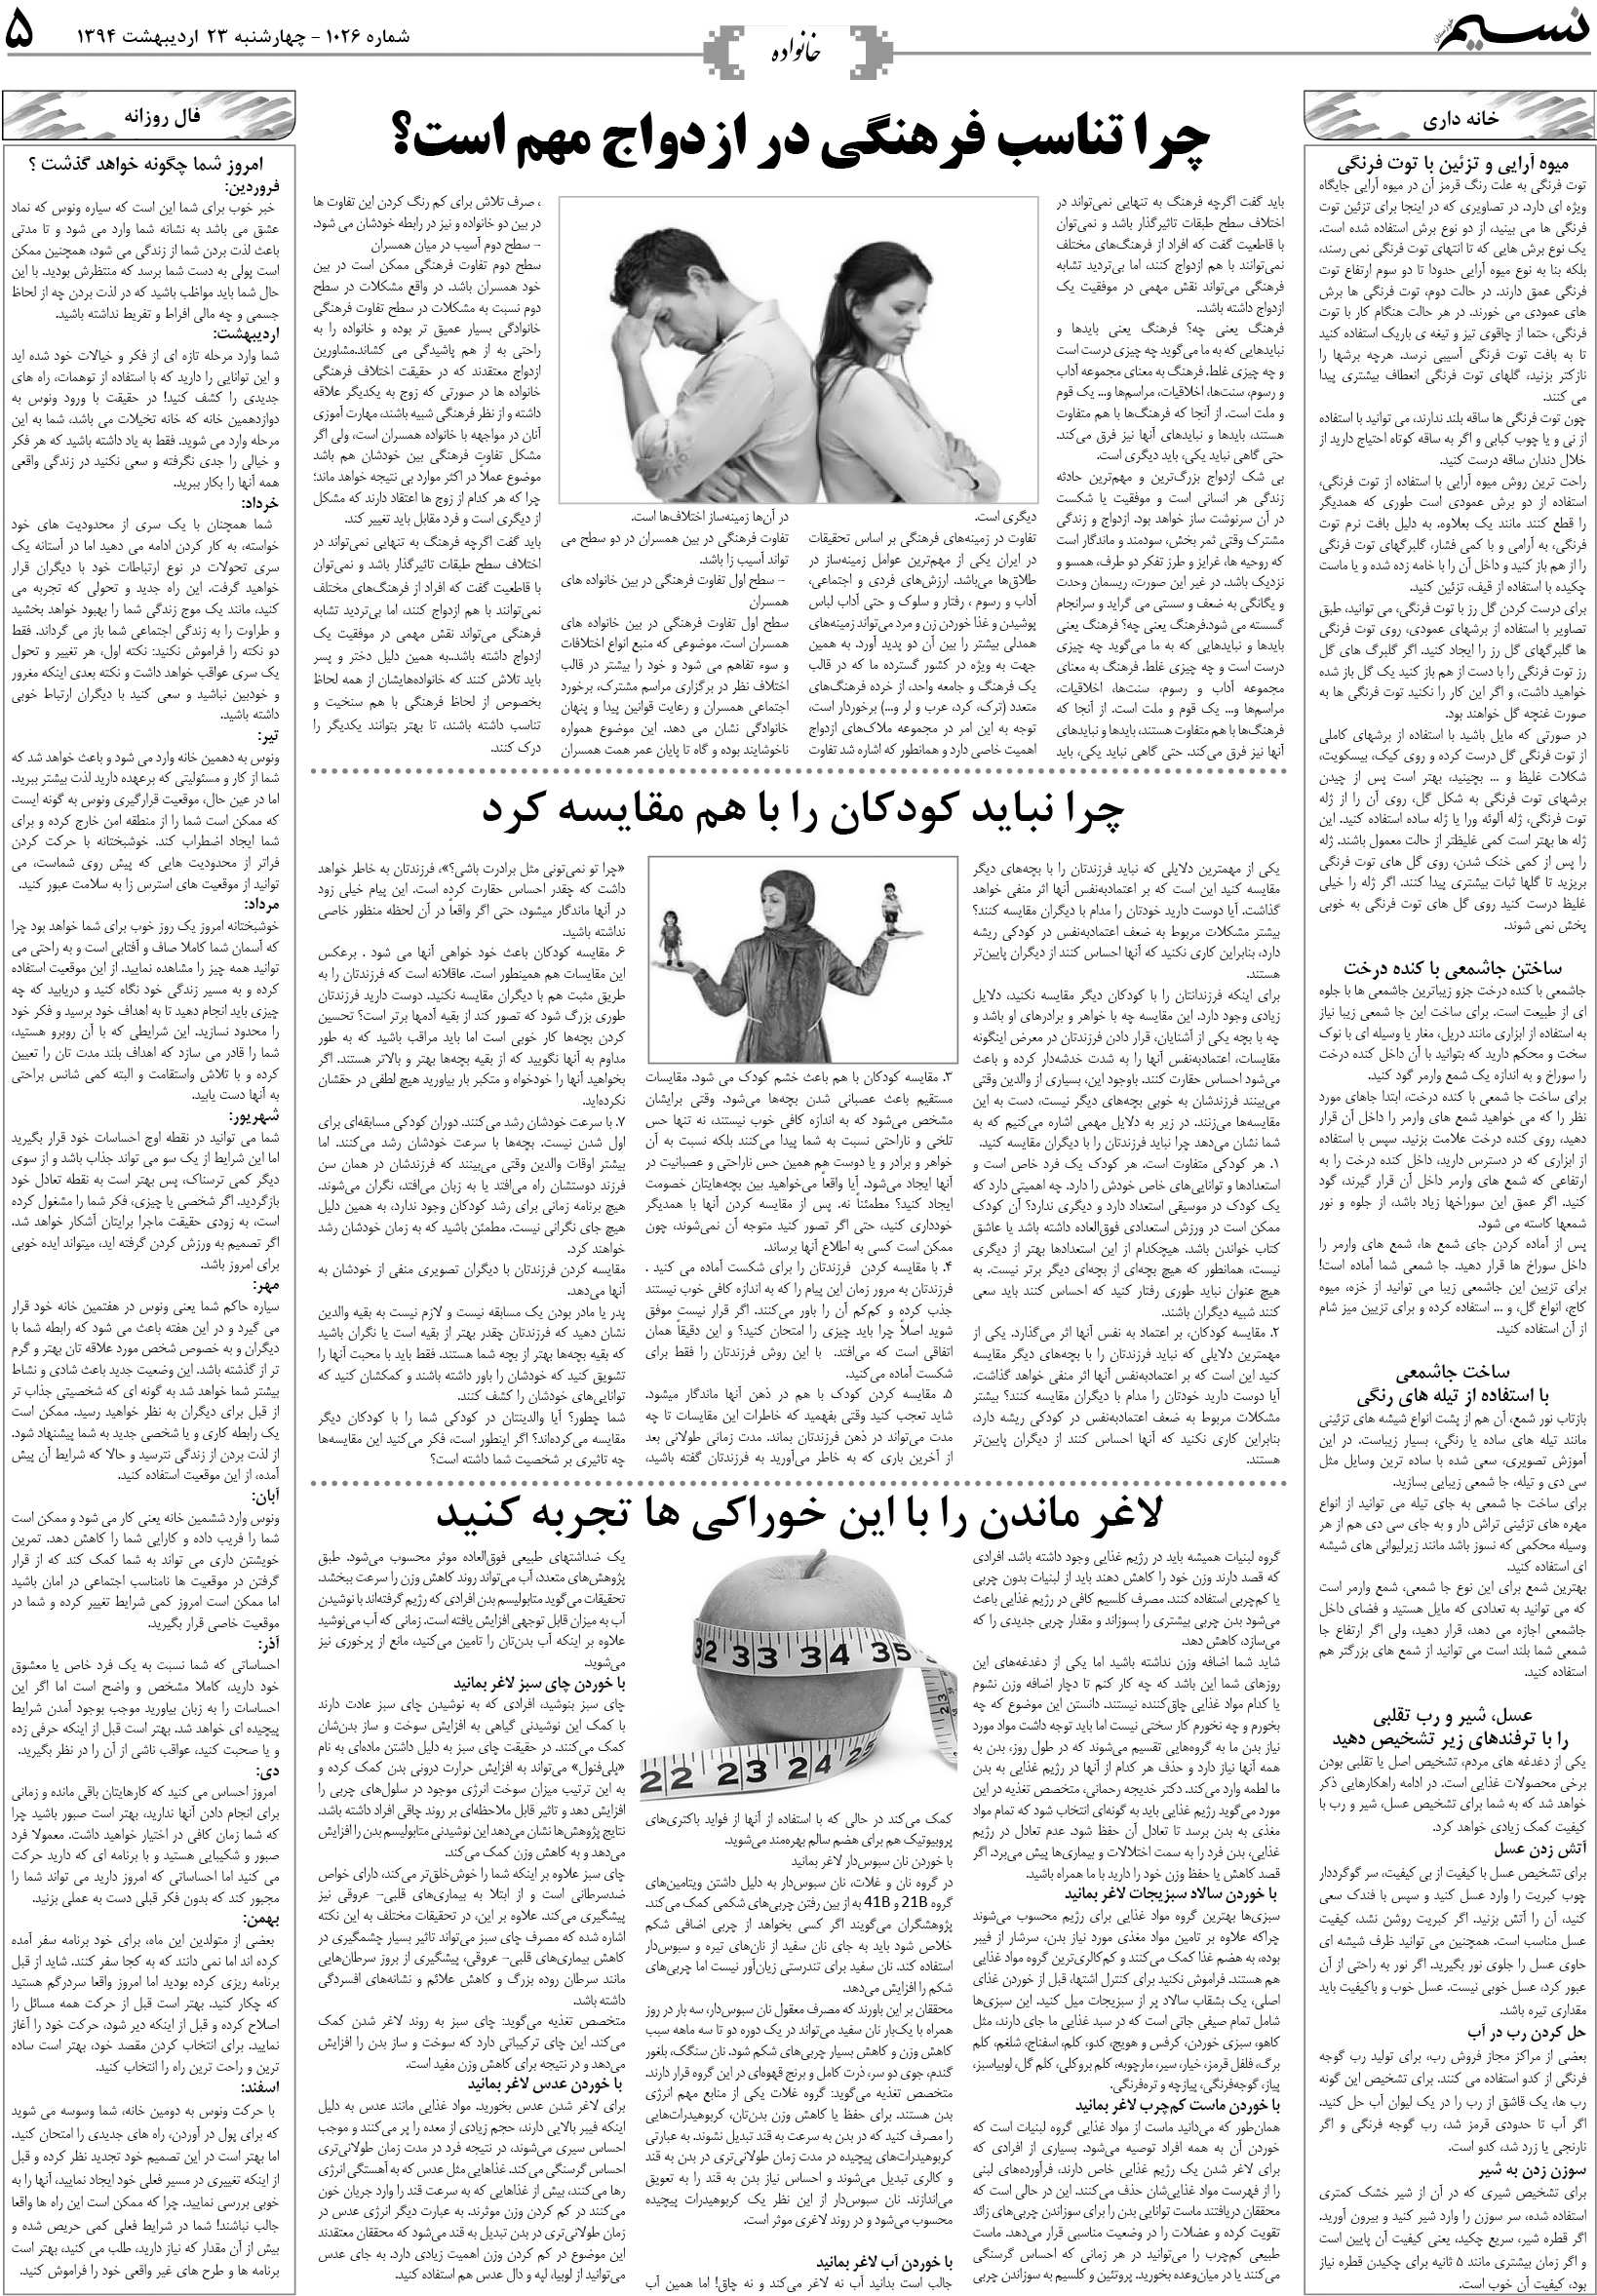 صفحه خانواده روزنامه نسیم شماره 1026